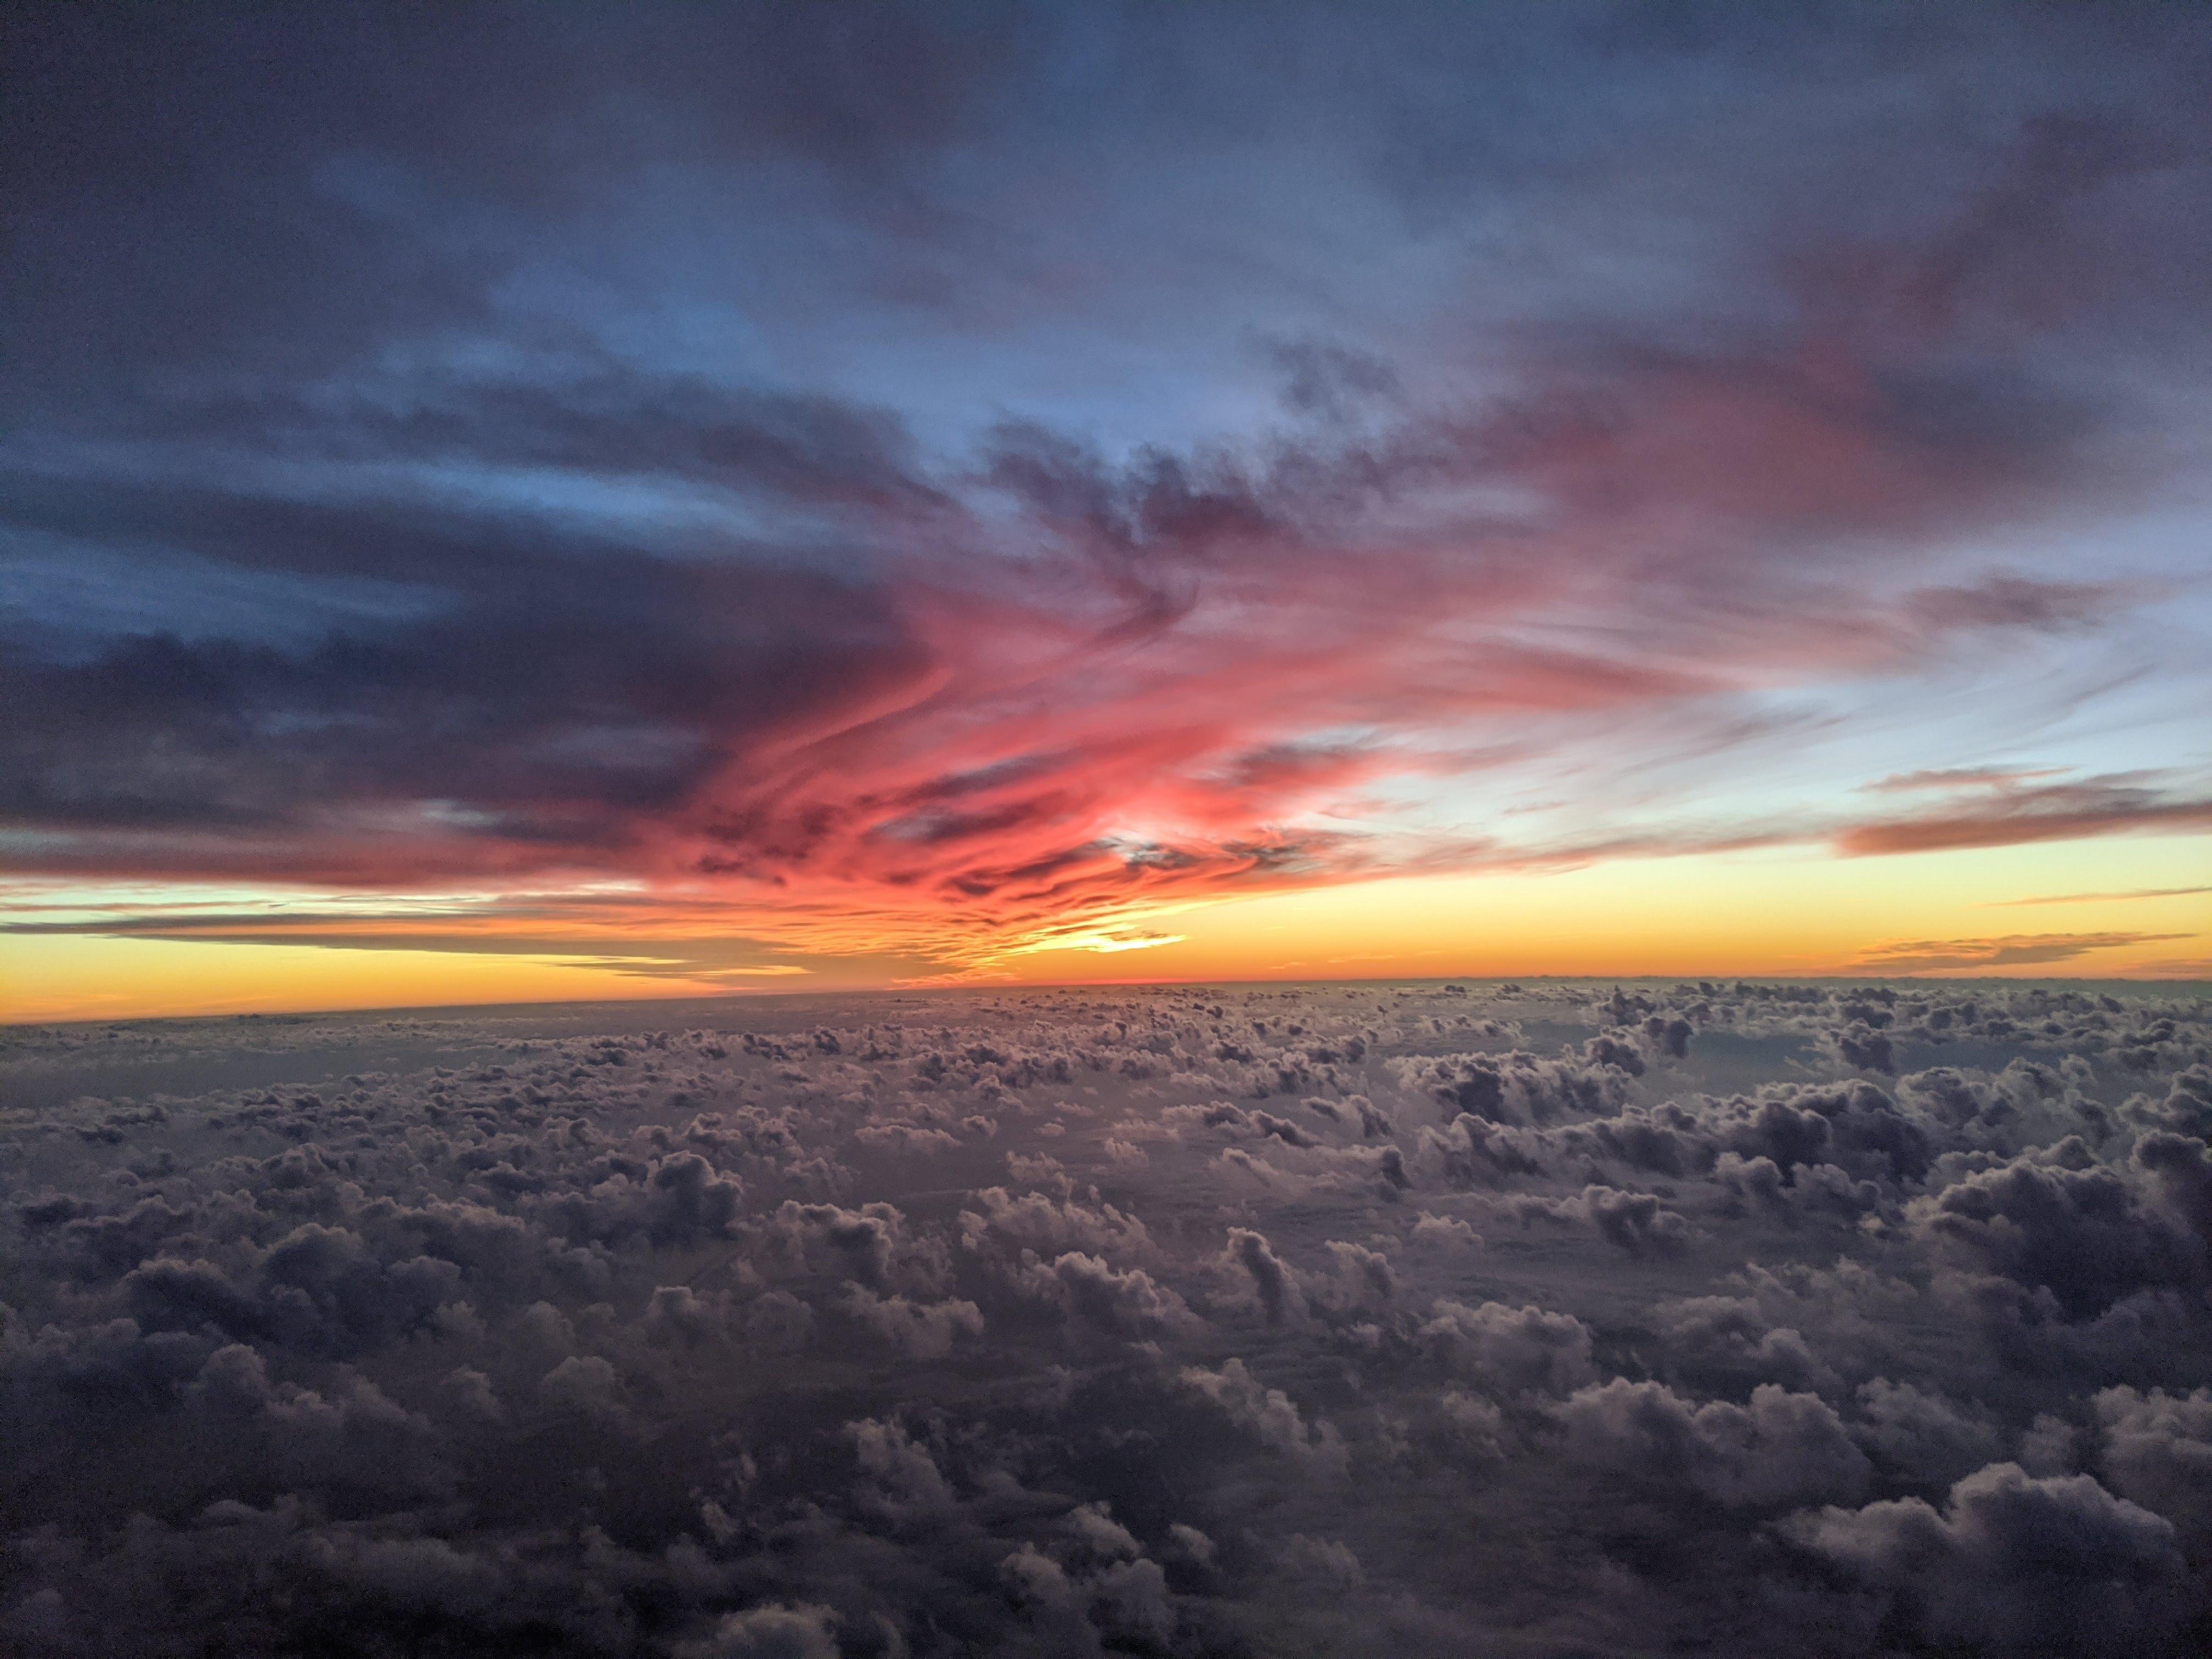 cloud view from flight 4k 1602501619 - Cloud View From Flight 4k - Cloud View From Flight 4k wallpapers